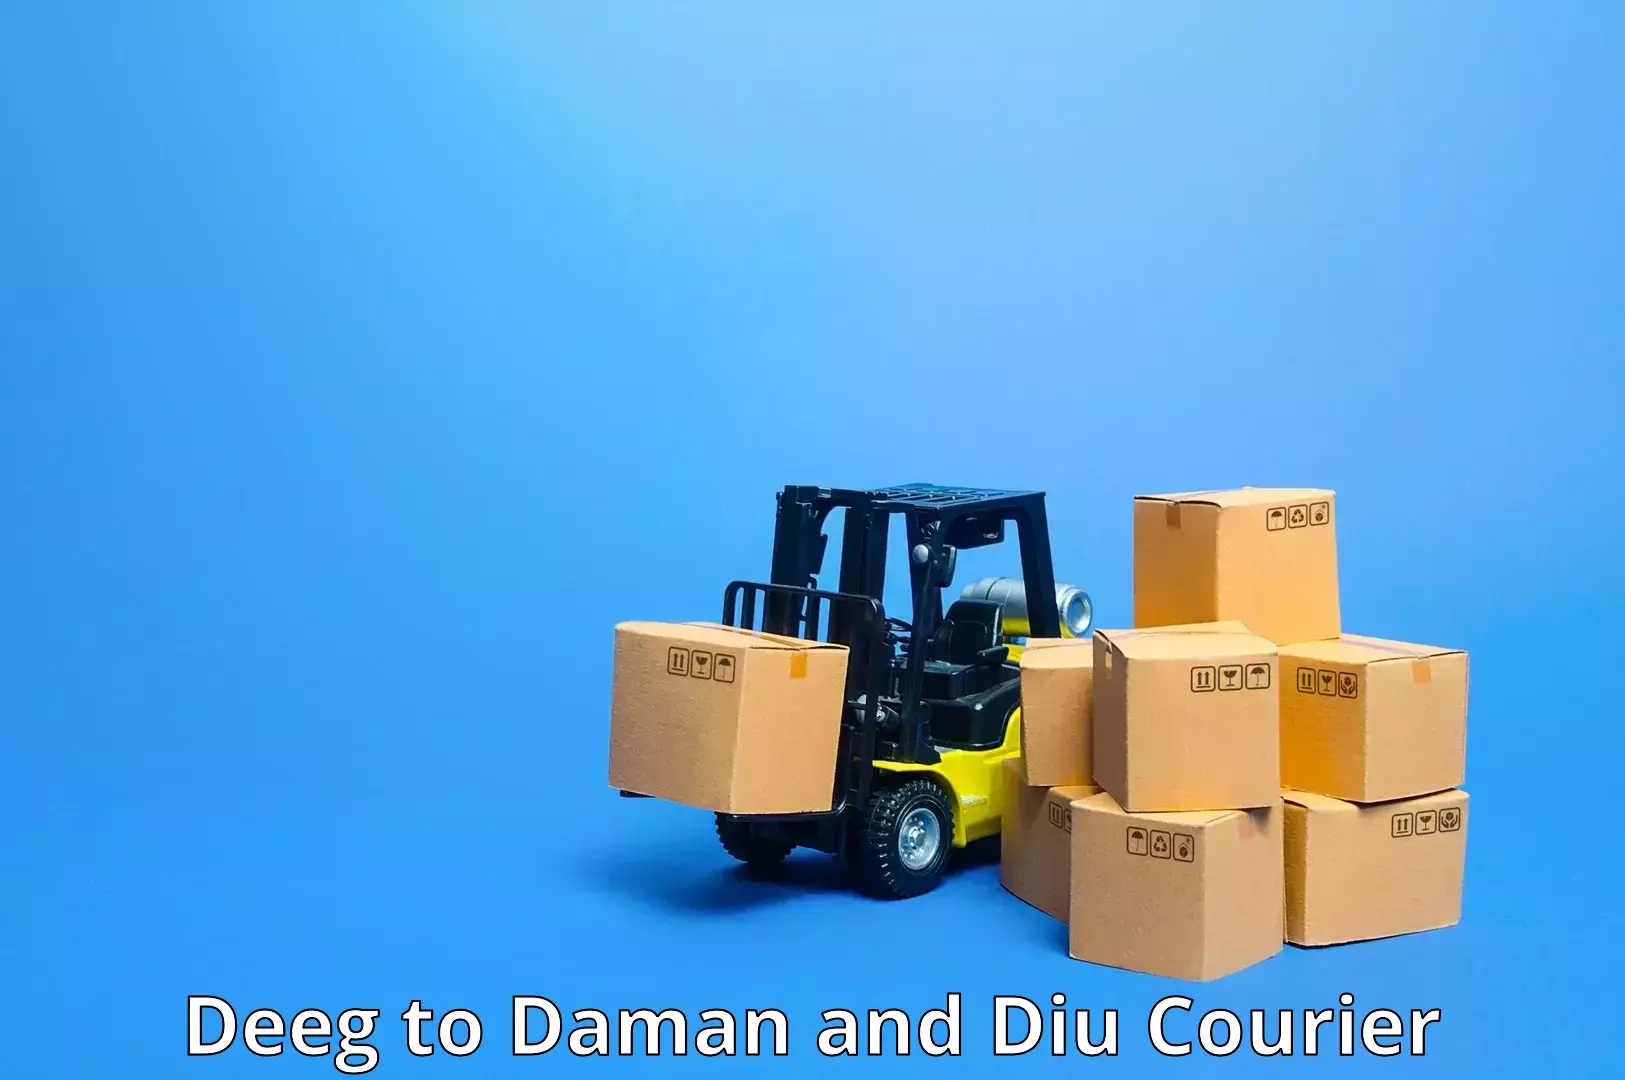 Courier service comparison Deeg to Daman